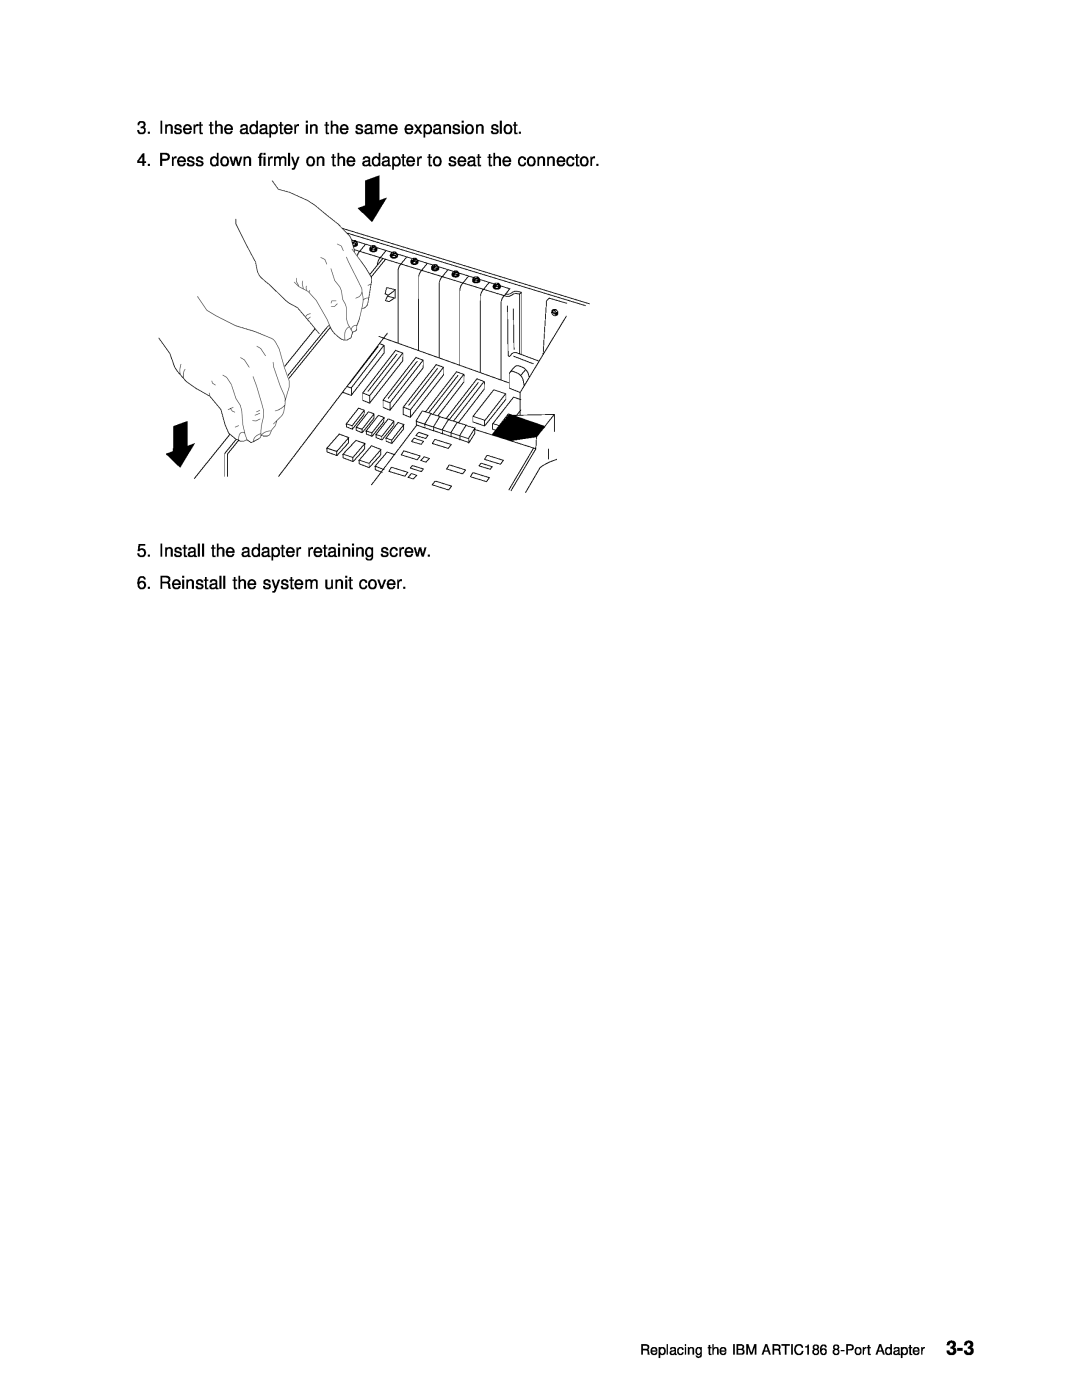 IBM manual Replacing the IBM ARTIC186 8-Port Adapter3-3 